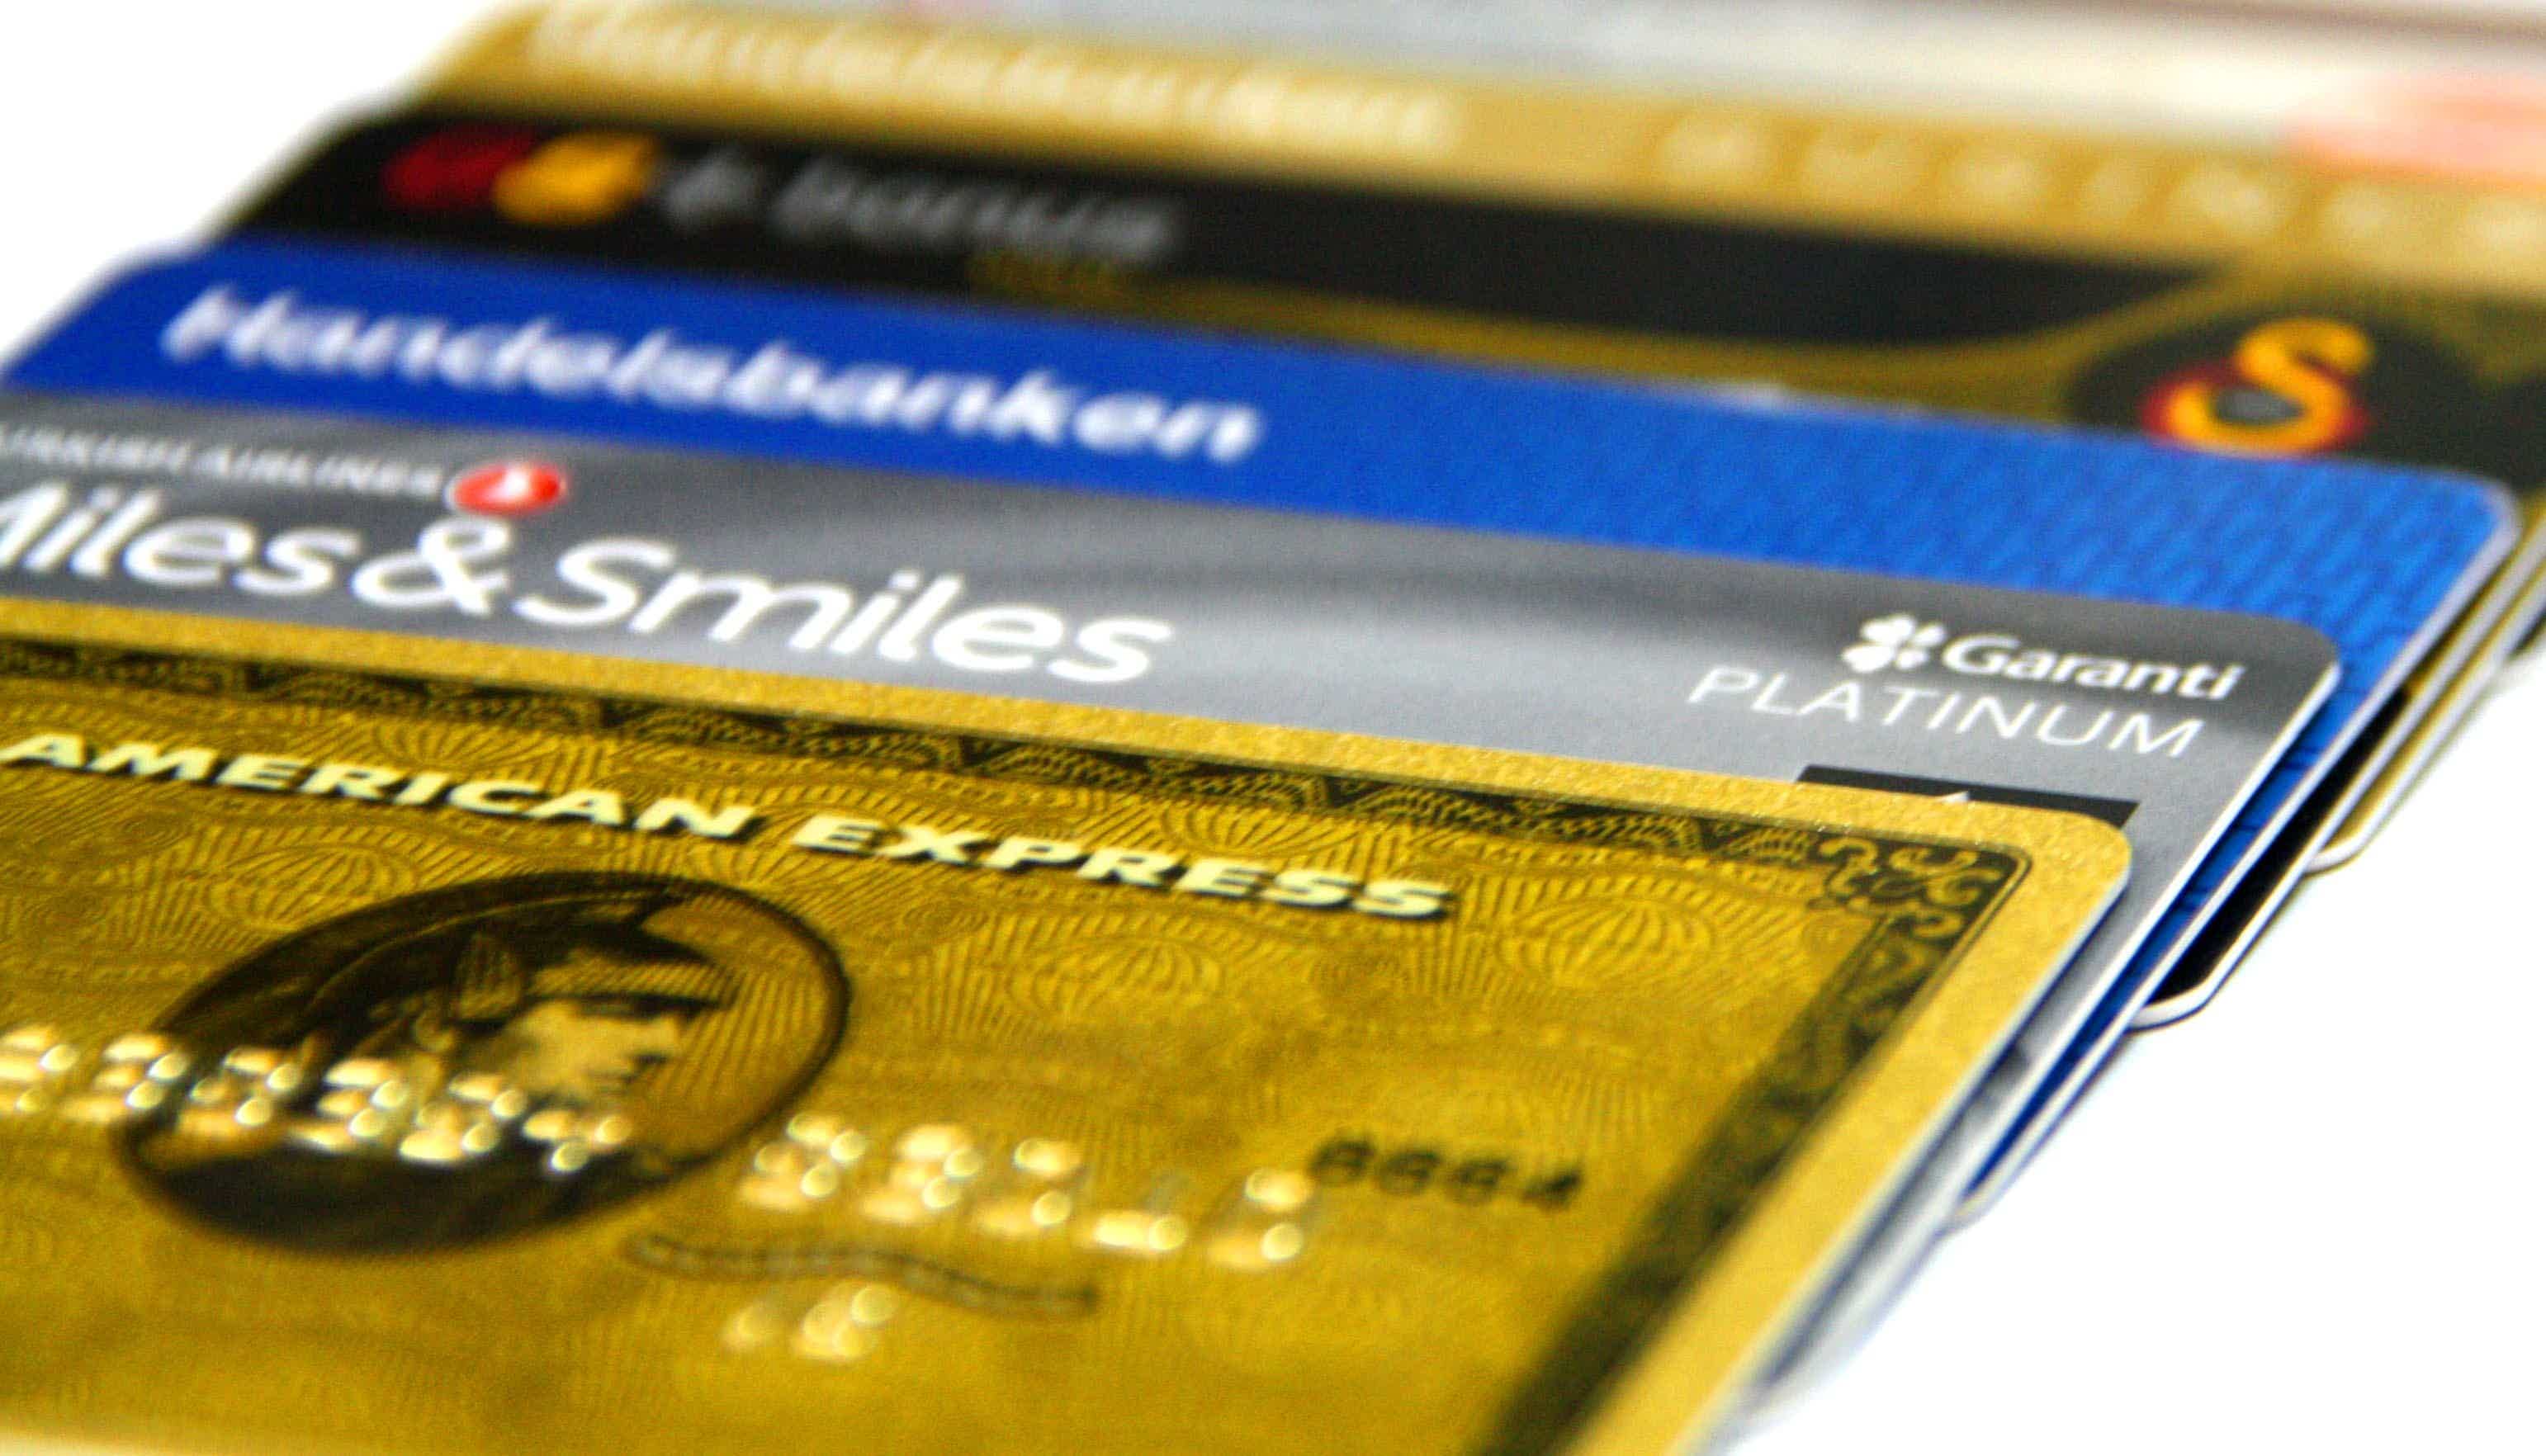 Cartões de crédito sem limite pré-estabelecido estão disponíveis em linhas exclusivas. Fonte: Pxhere.